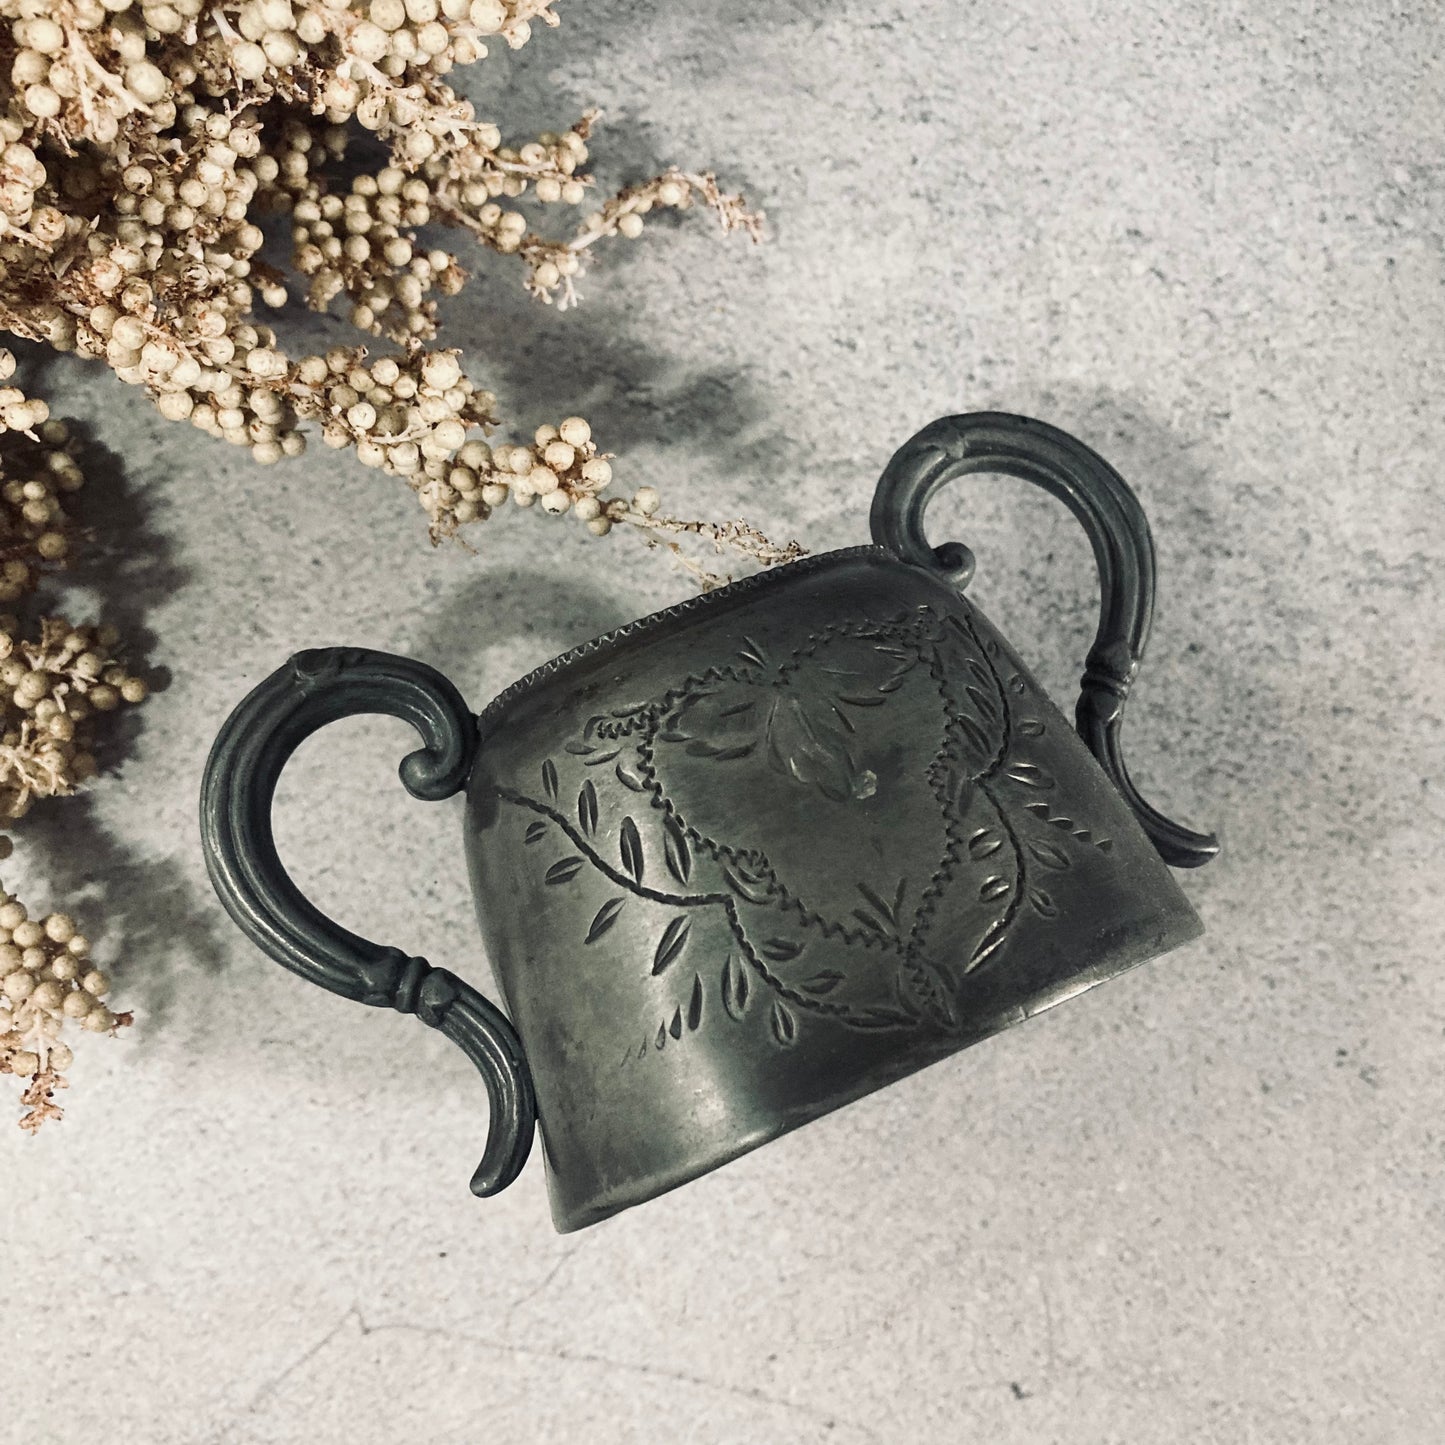 Antique English Pewter Engraved Sugar Bowls